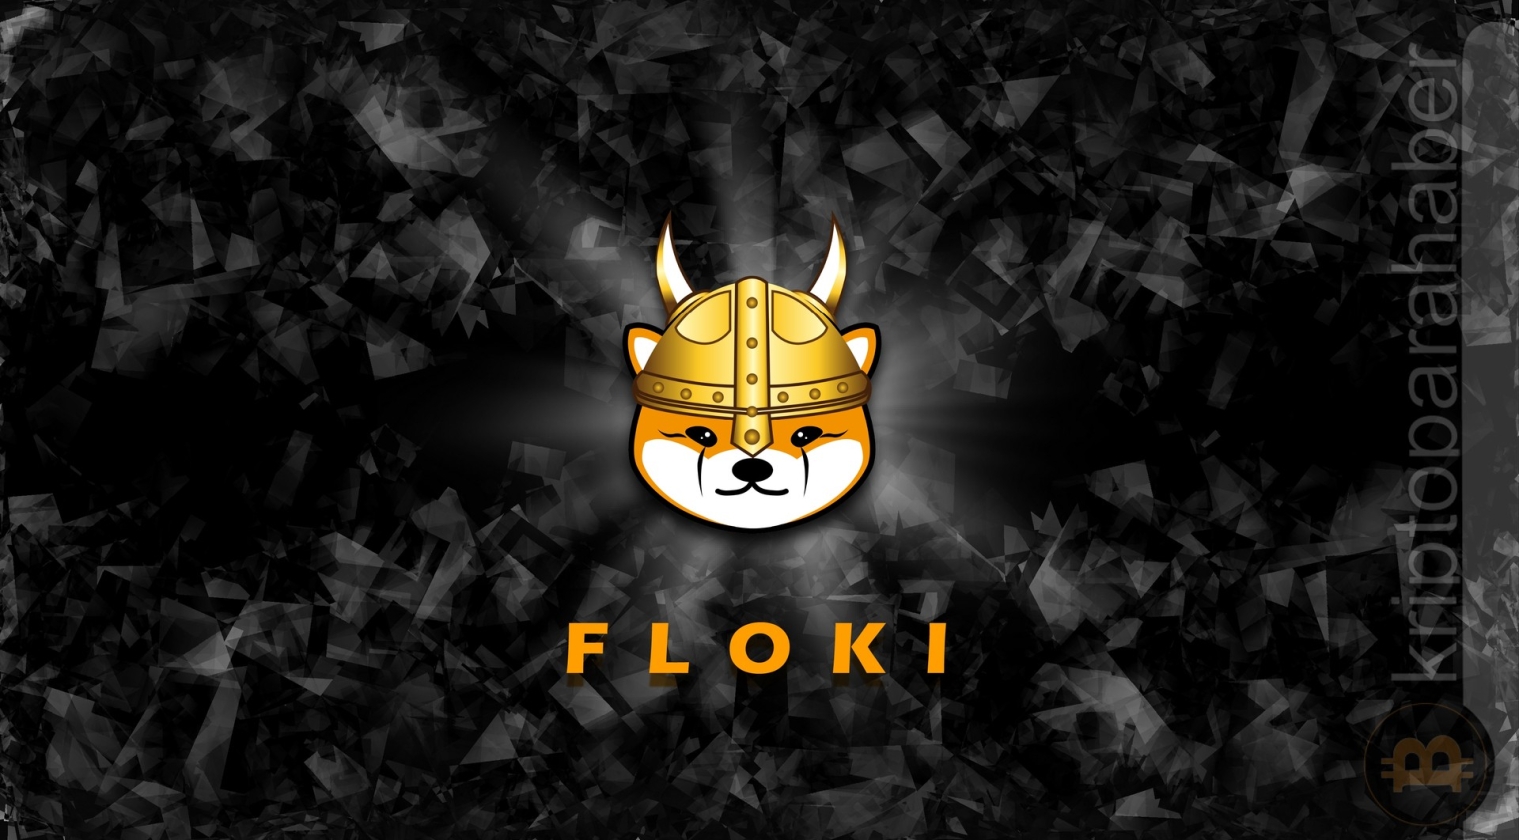 Floki Inu en büyük meme para olabilir mi, floki nasıl alınır, floki dogeyi geçebilir mi, floki coin, floki